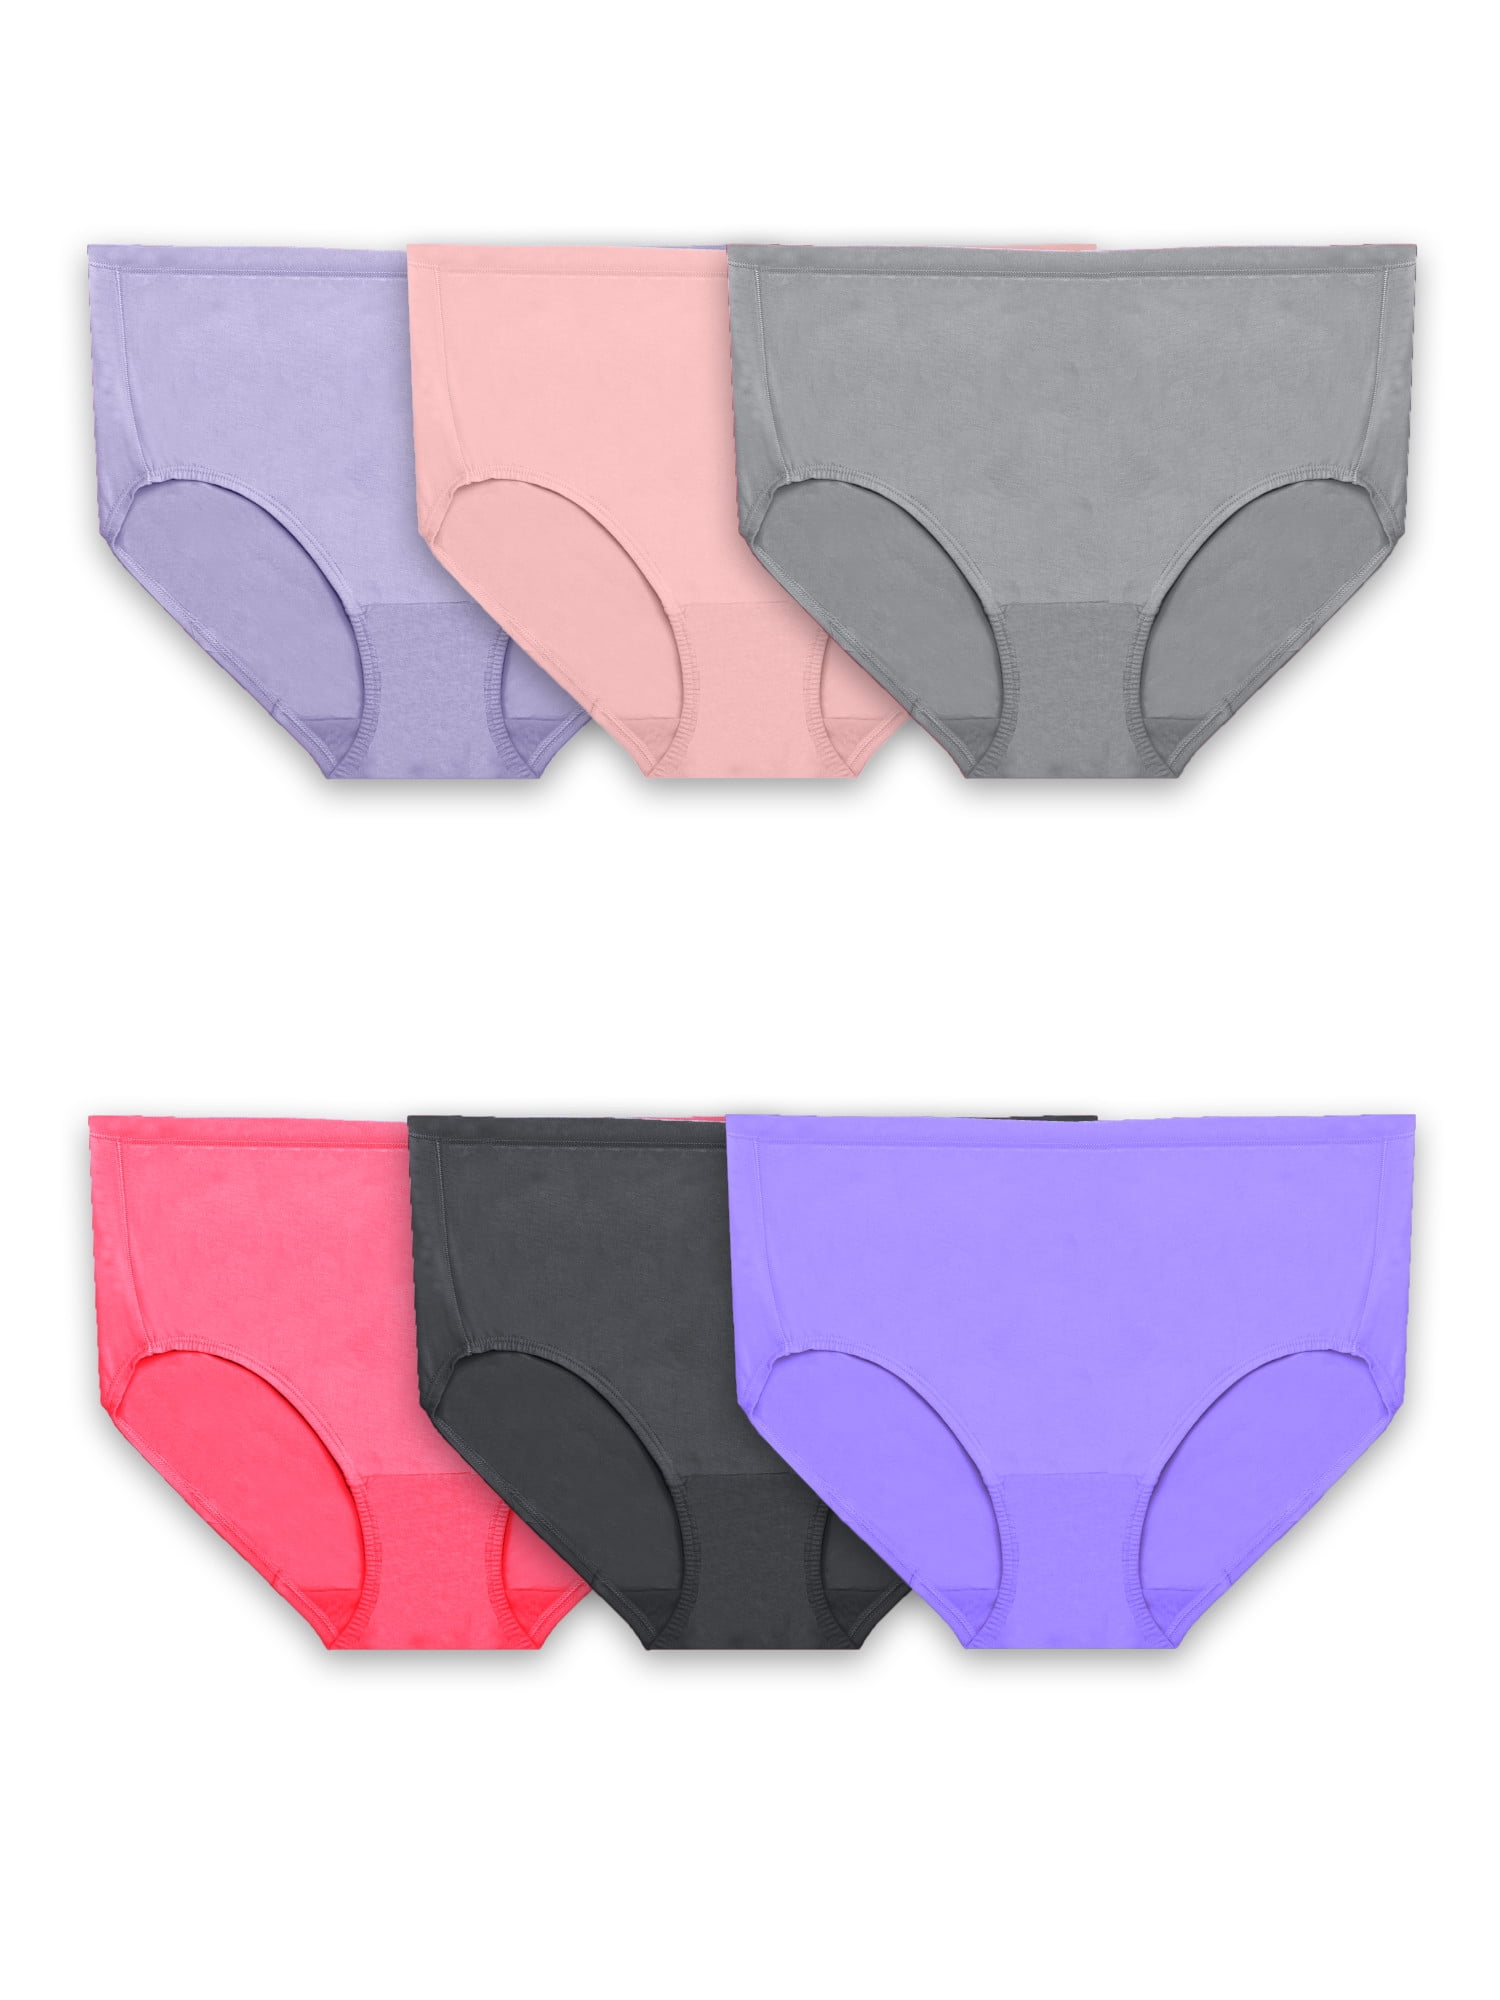 Hanes Toddler Boy Potty Trainer Brief Underwear, 6 Pack, Sizes 2T